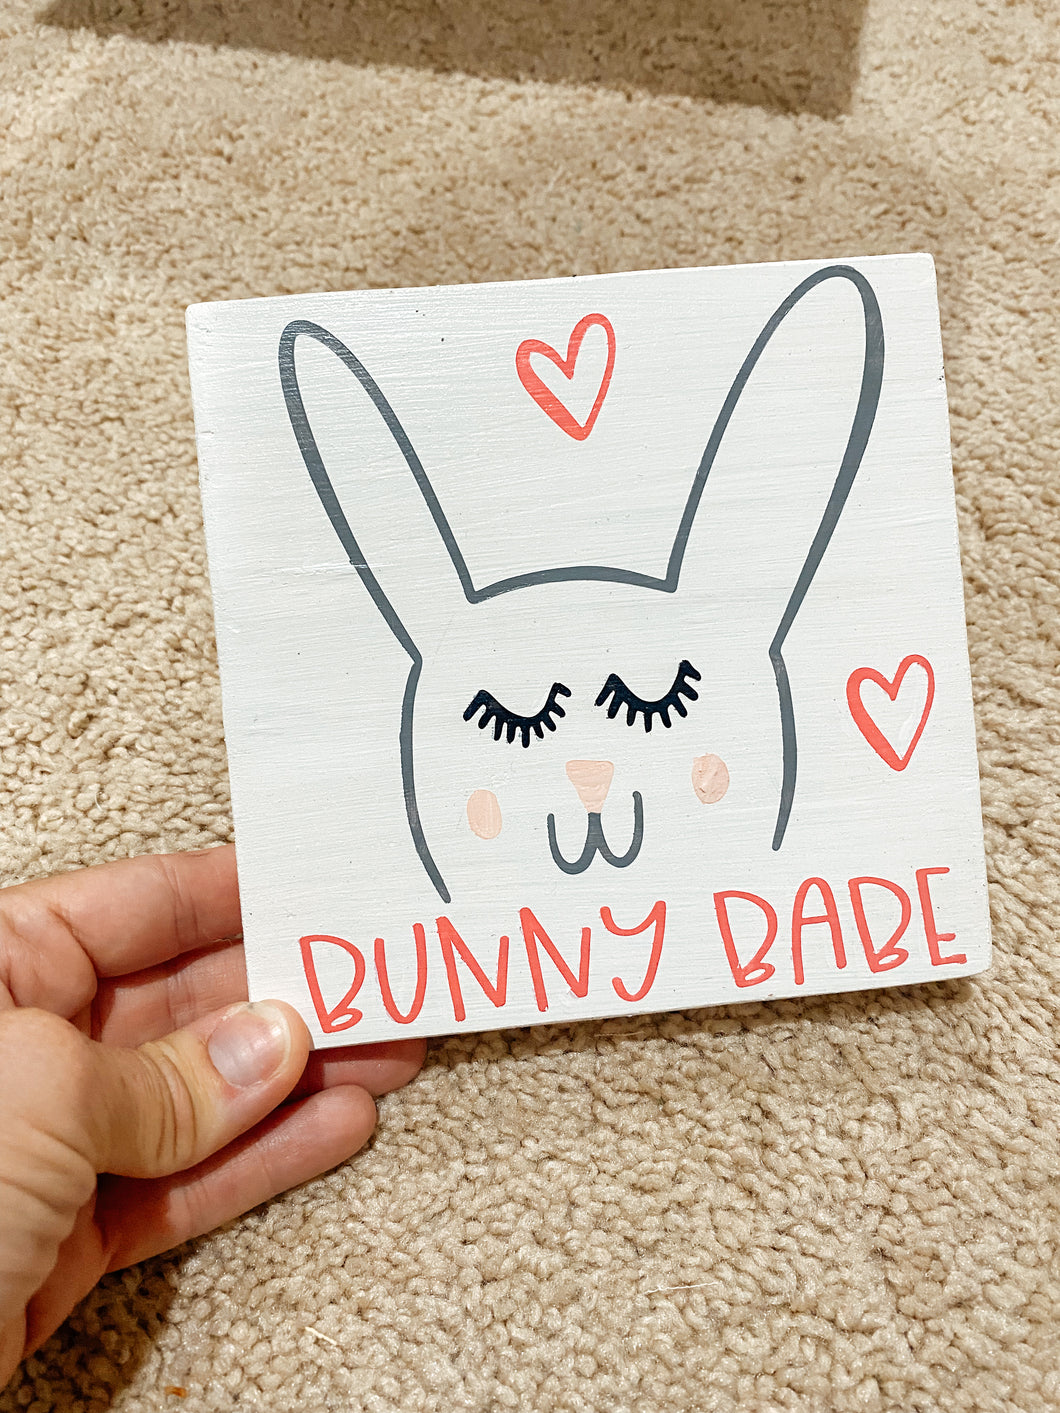 Bunny babe